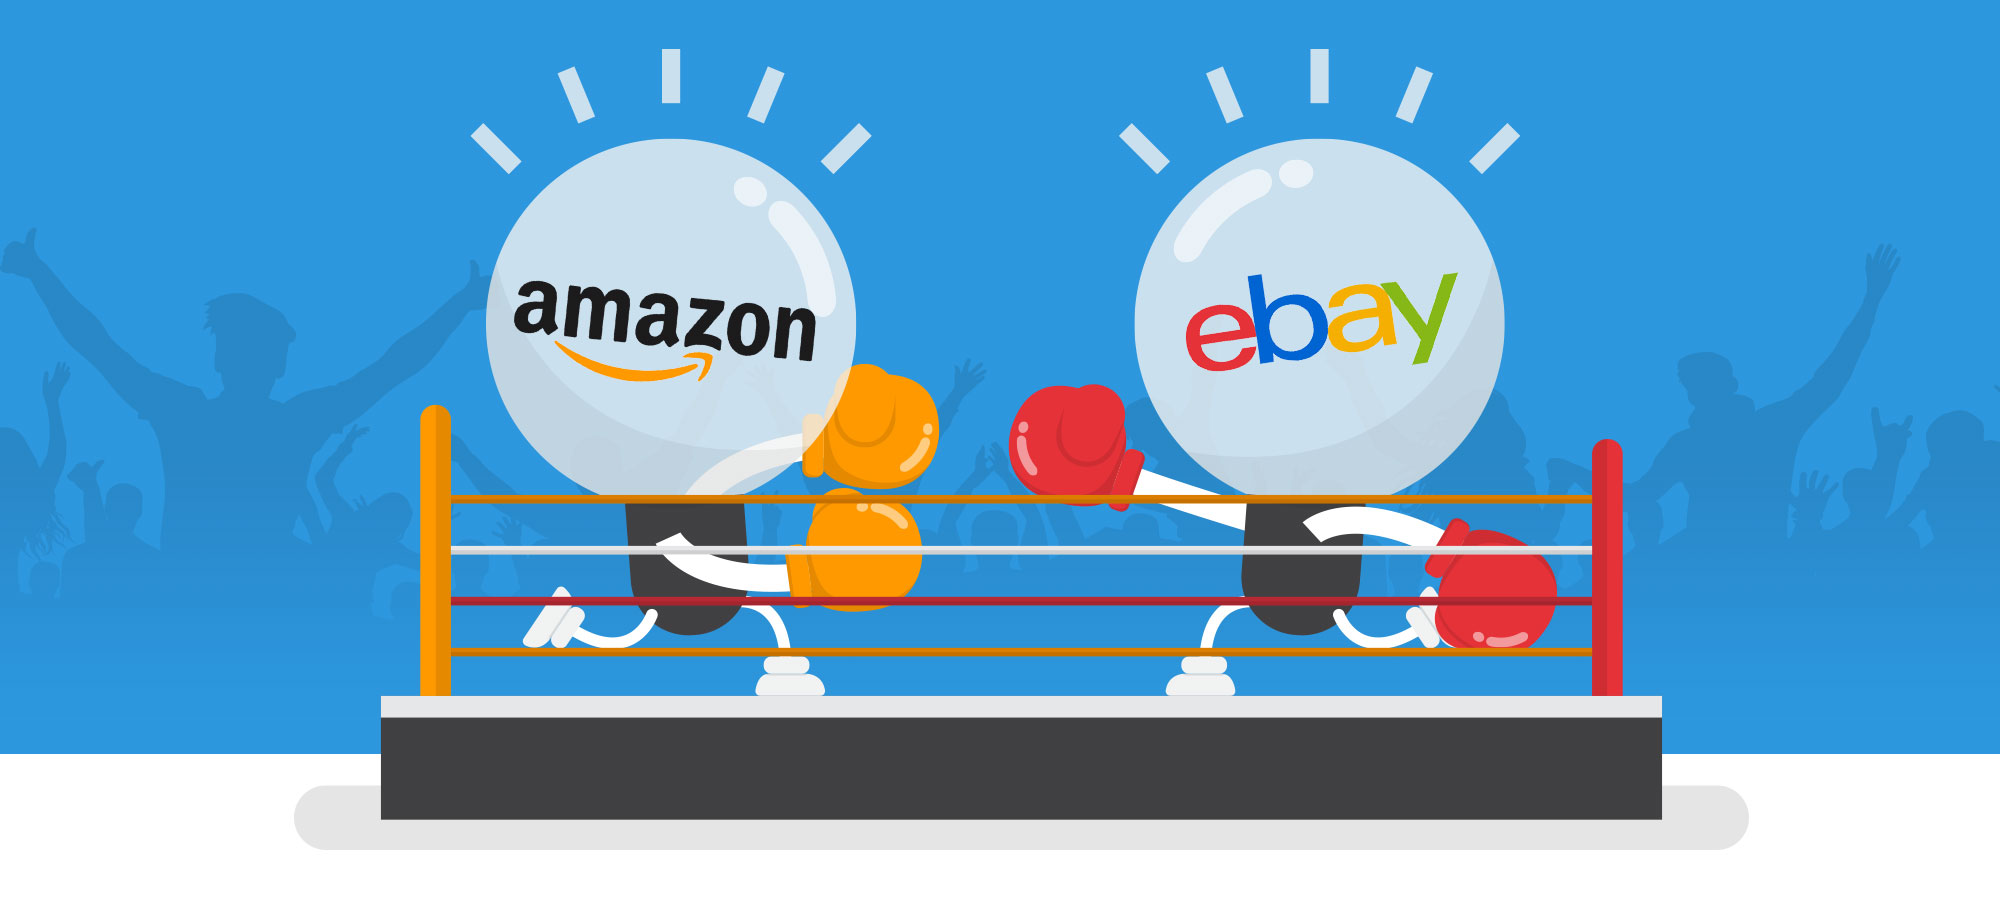 Amazon Vs eBay 2020 ¿Cual es mejor para vender?